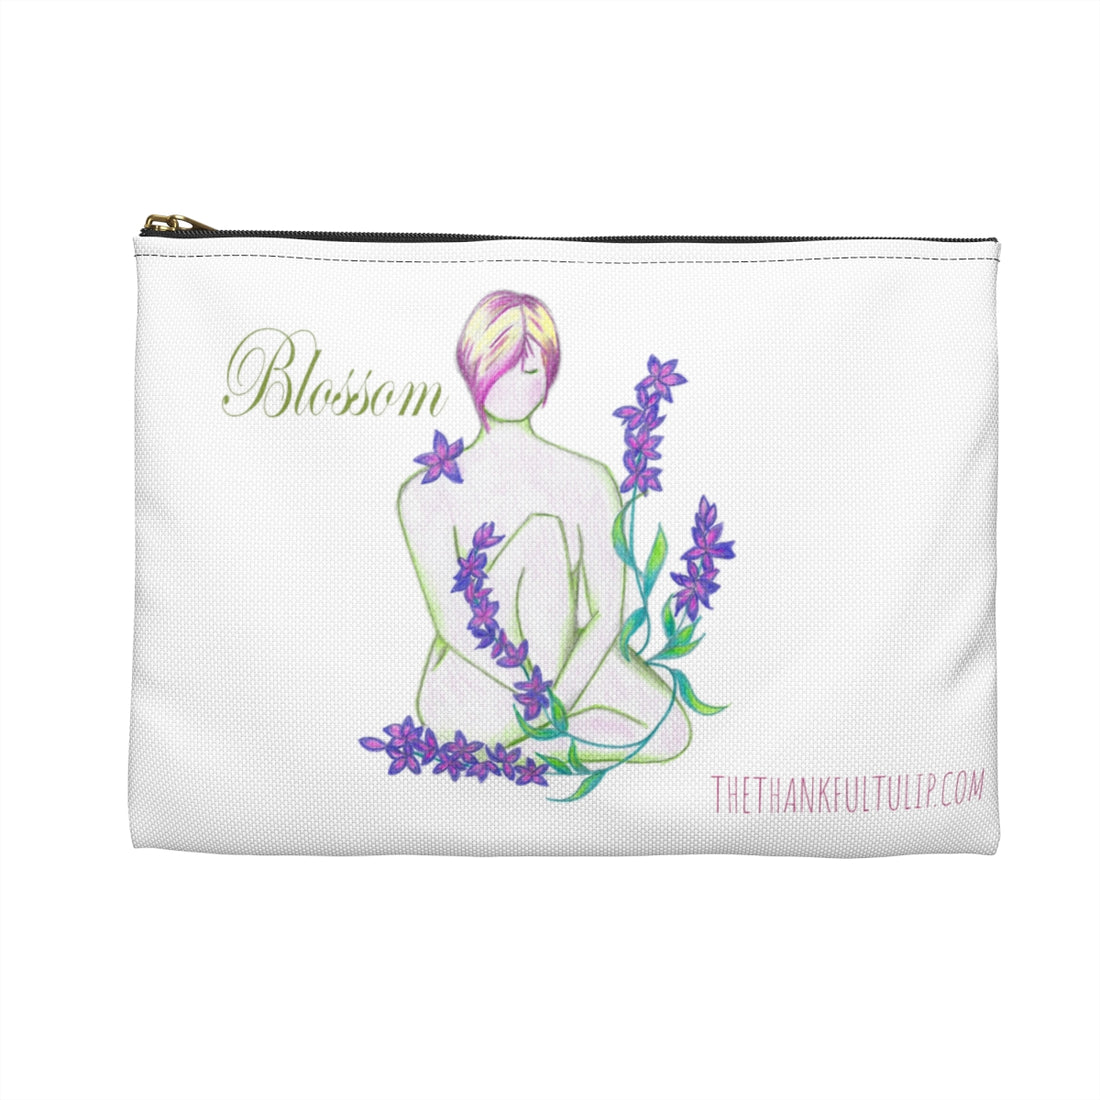  Blossom Bag